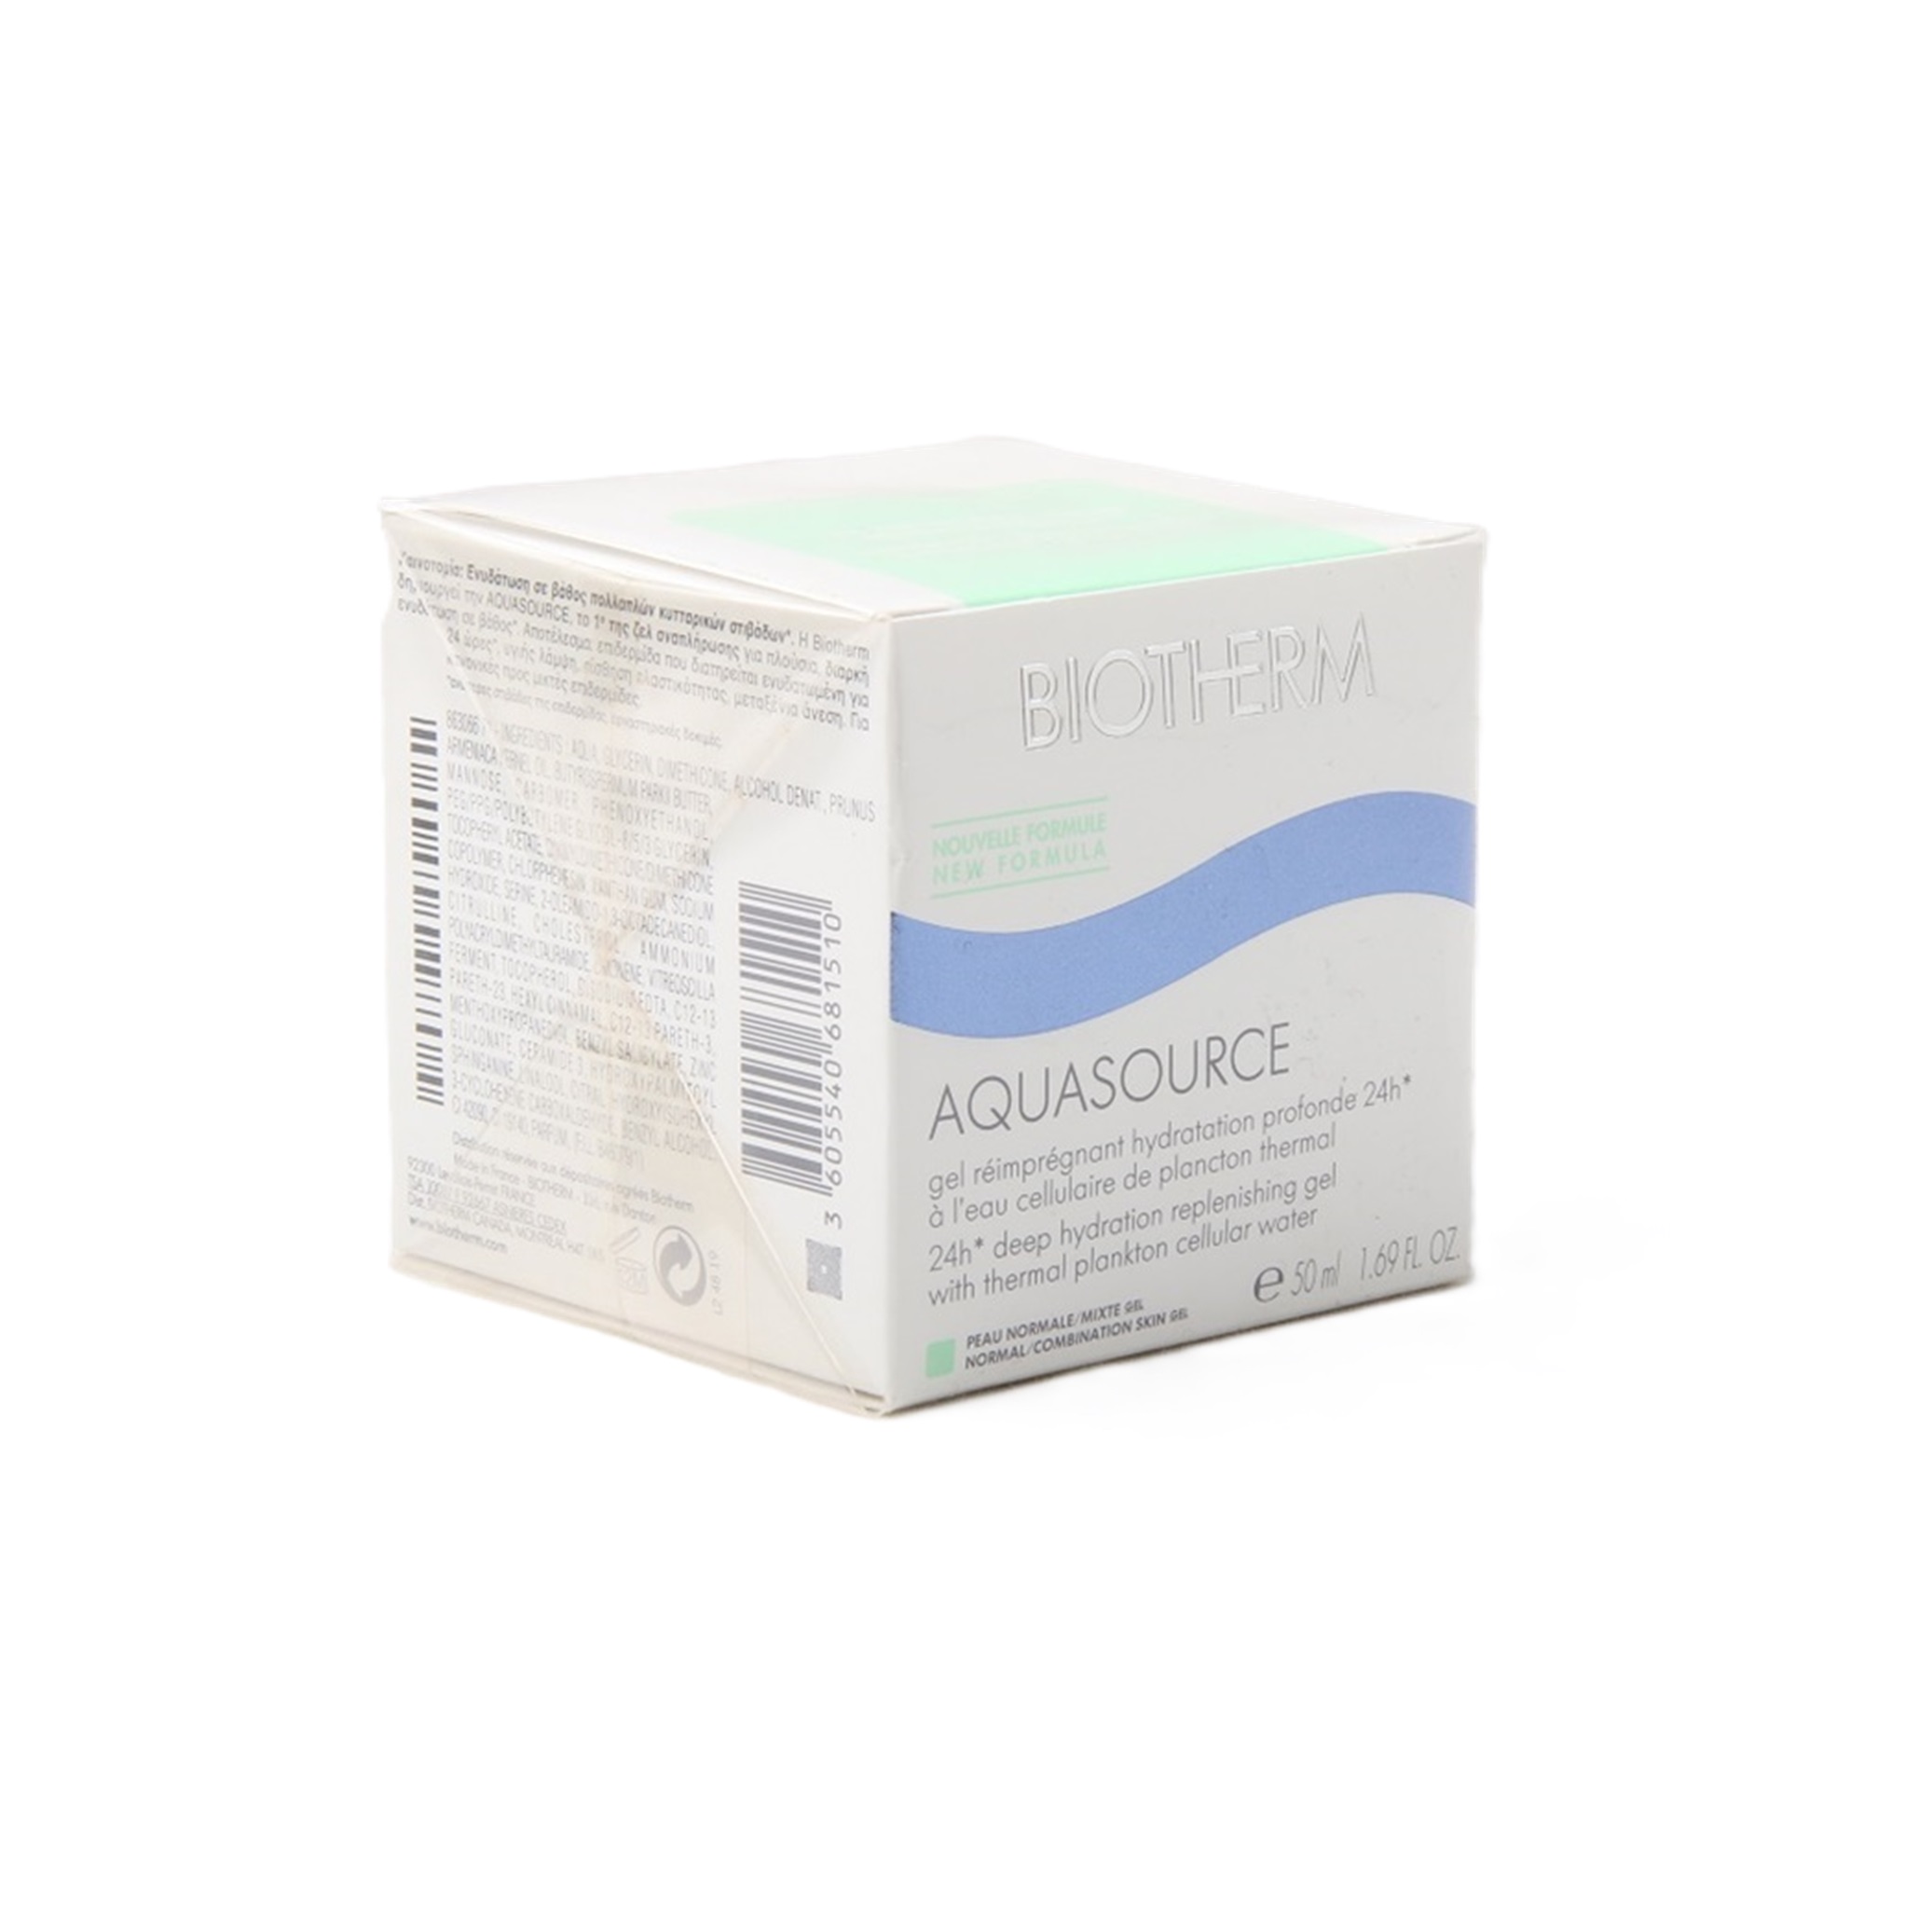 Biotherm Aquasource 24h  cream Normale Haut 50ml